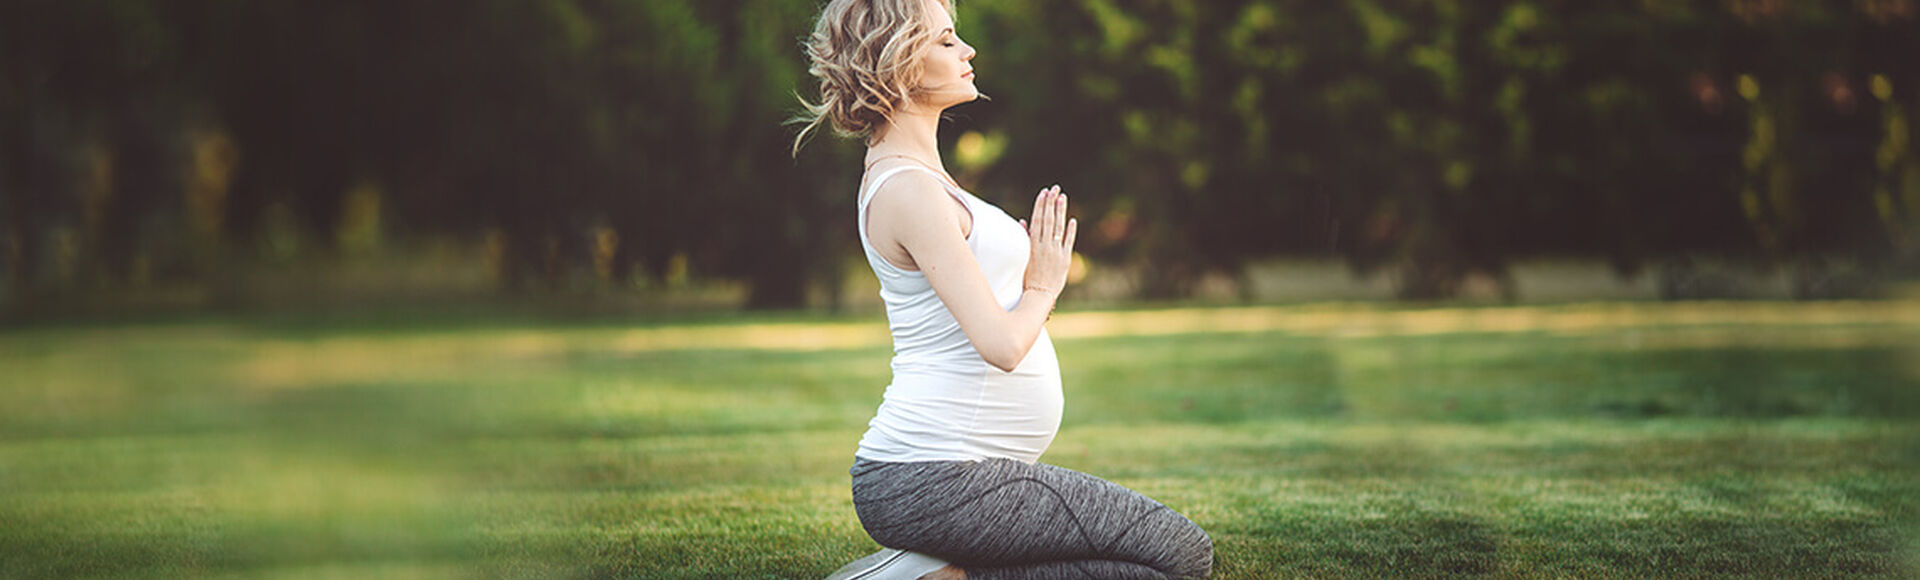 Relajación y visualización positiva para embarazadas | Más Abrazos by Huggies